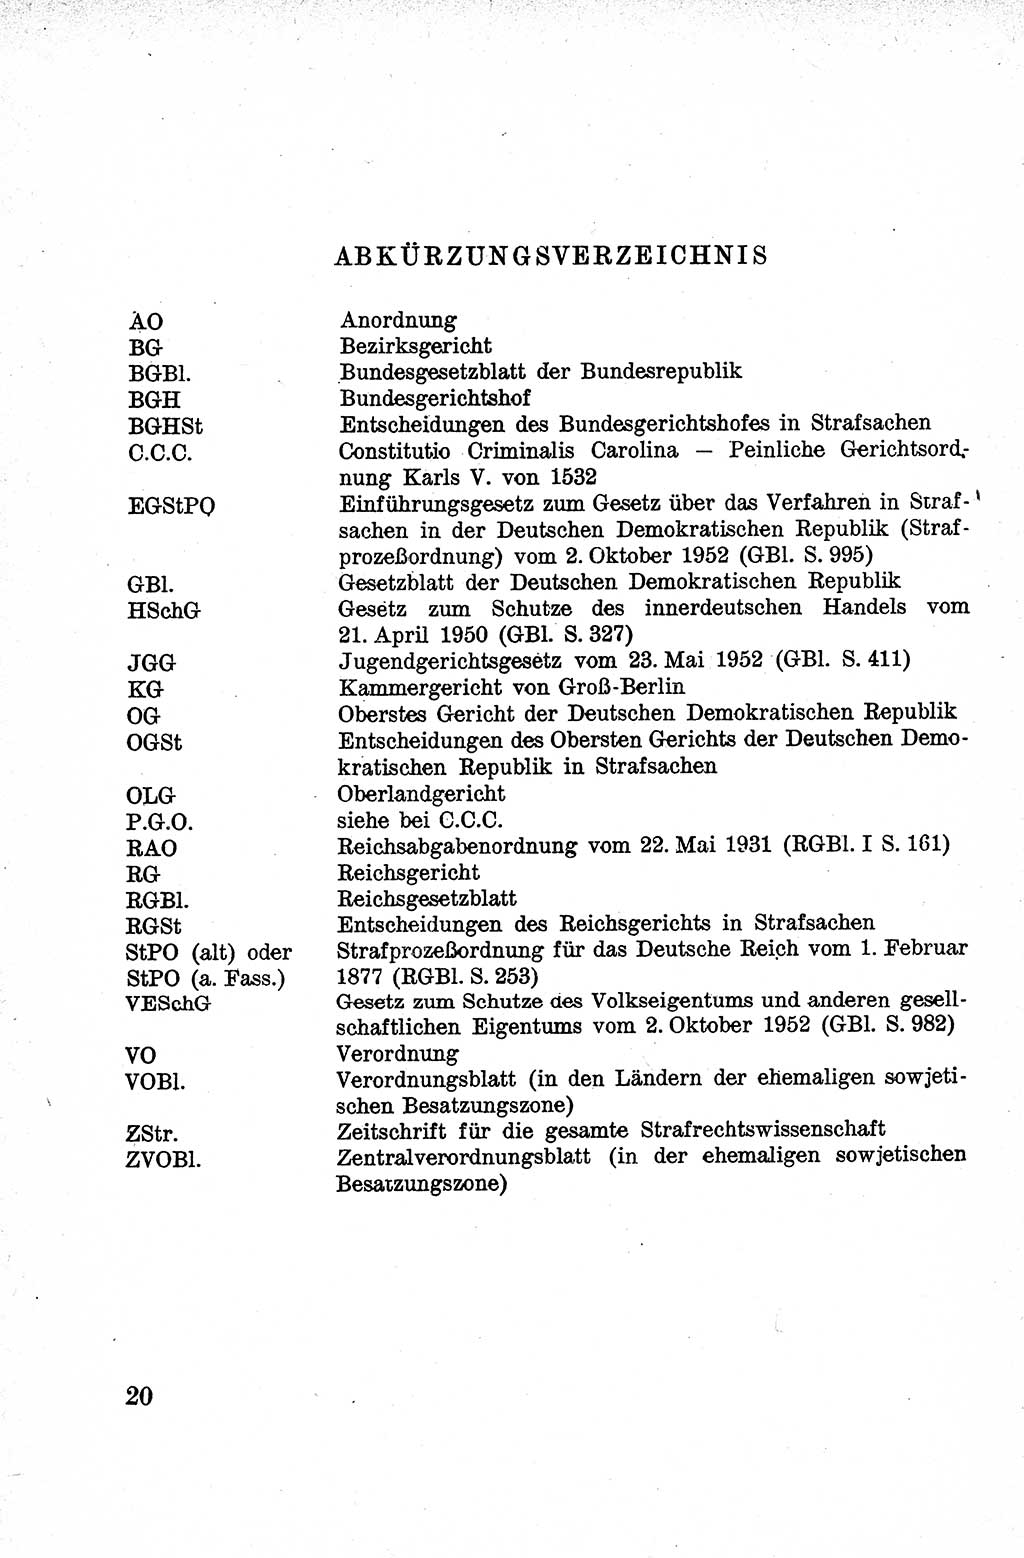 Lehrbuch des Strafrechts der Deutschen Demokratischen Republik (DDR), Allgemeiner Teil 1959, Seite 20 (Lb. Strafr. DDR AT 1959, S. 20)